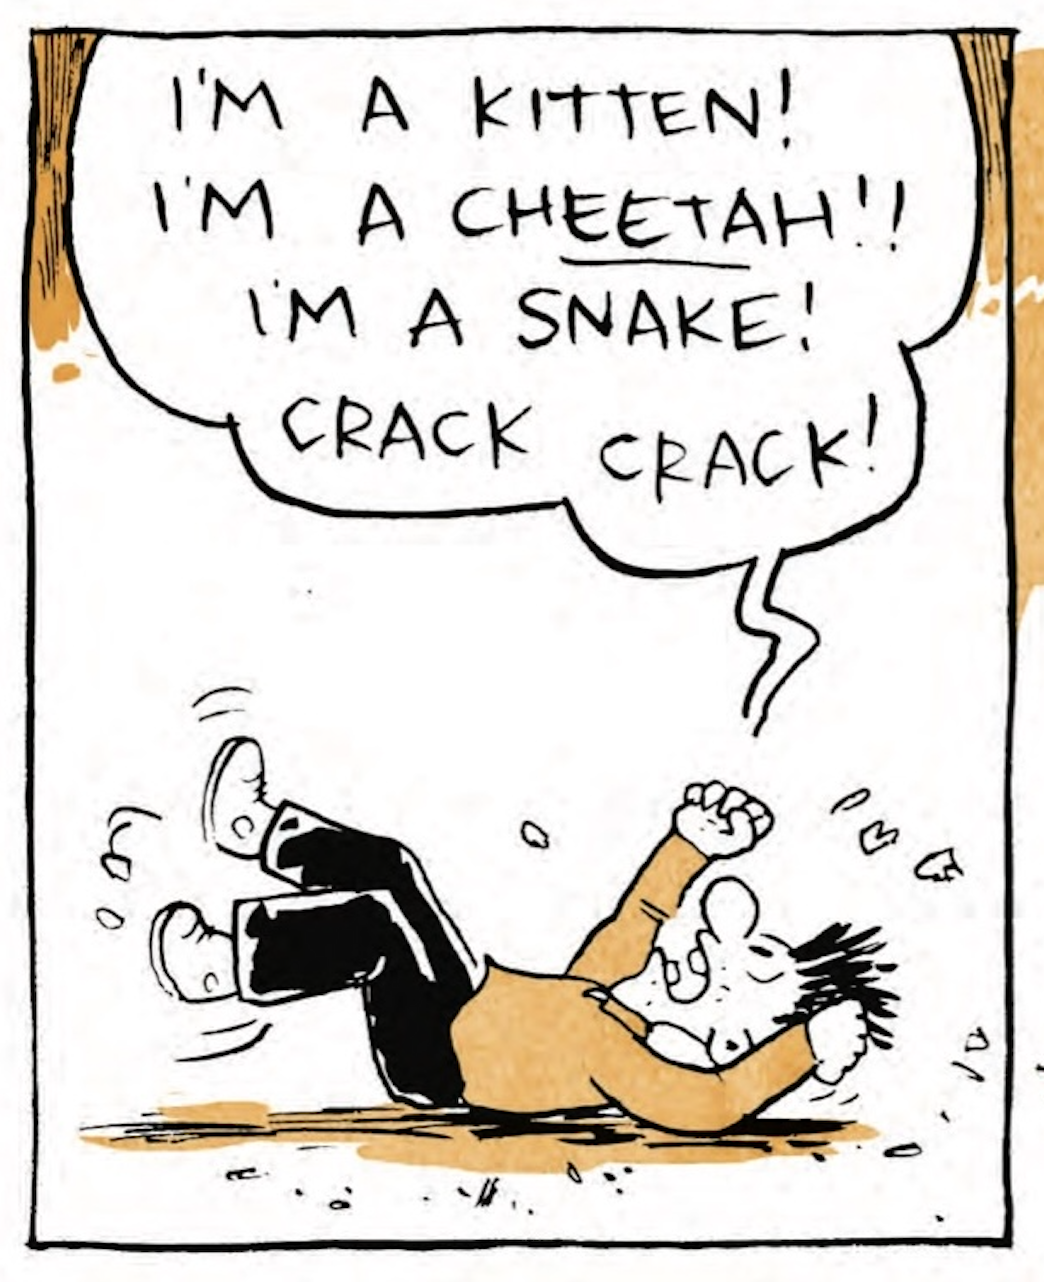 B is still on his back, thrashing his arms and legs: â€œIâ€™m a kitten! Iâ€™m a CHEETAH! Iâ€™m a snake! Crack crack!â€